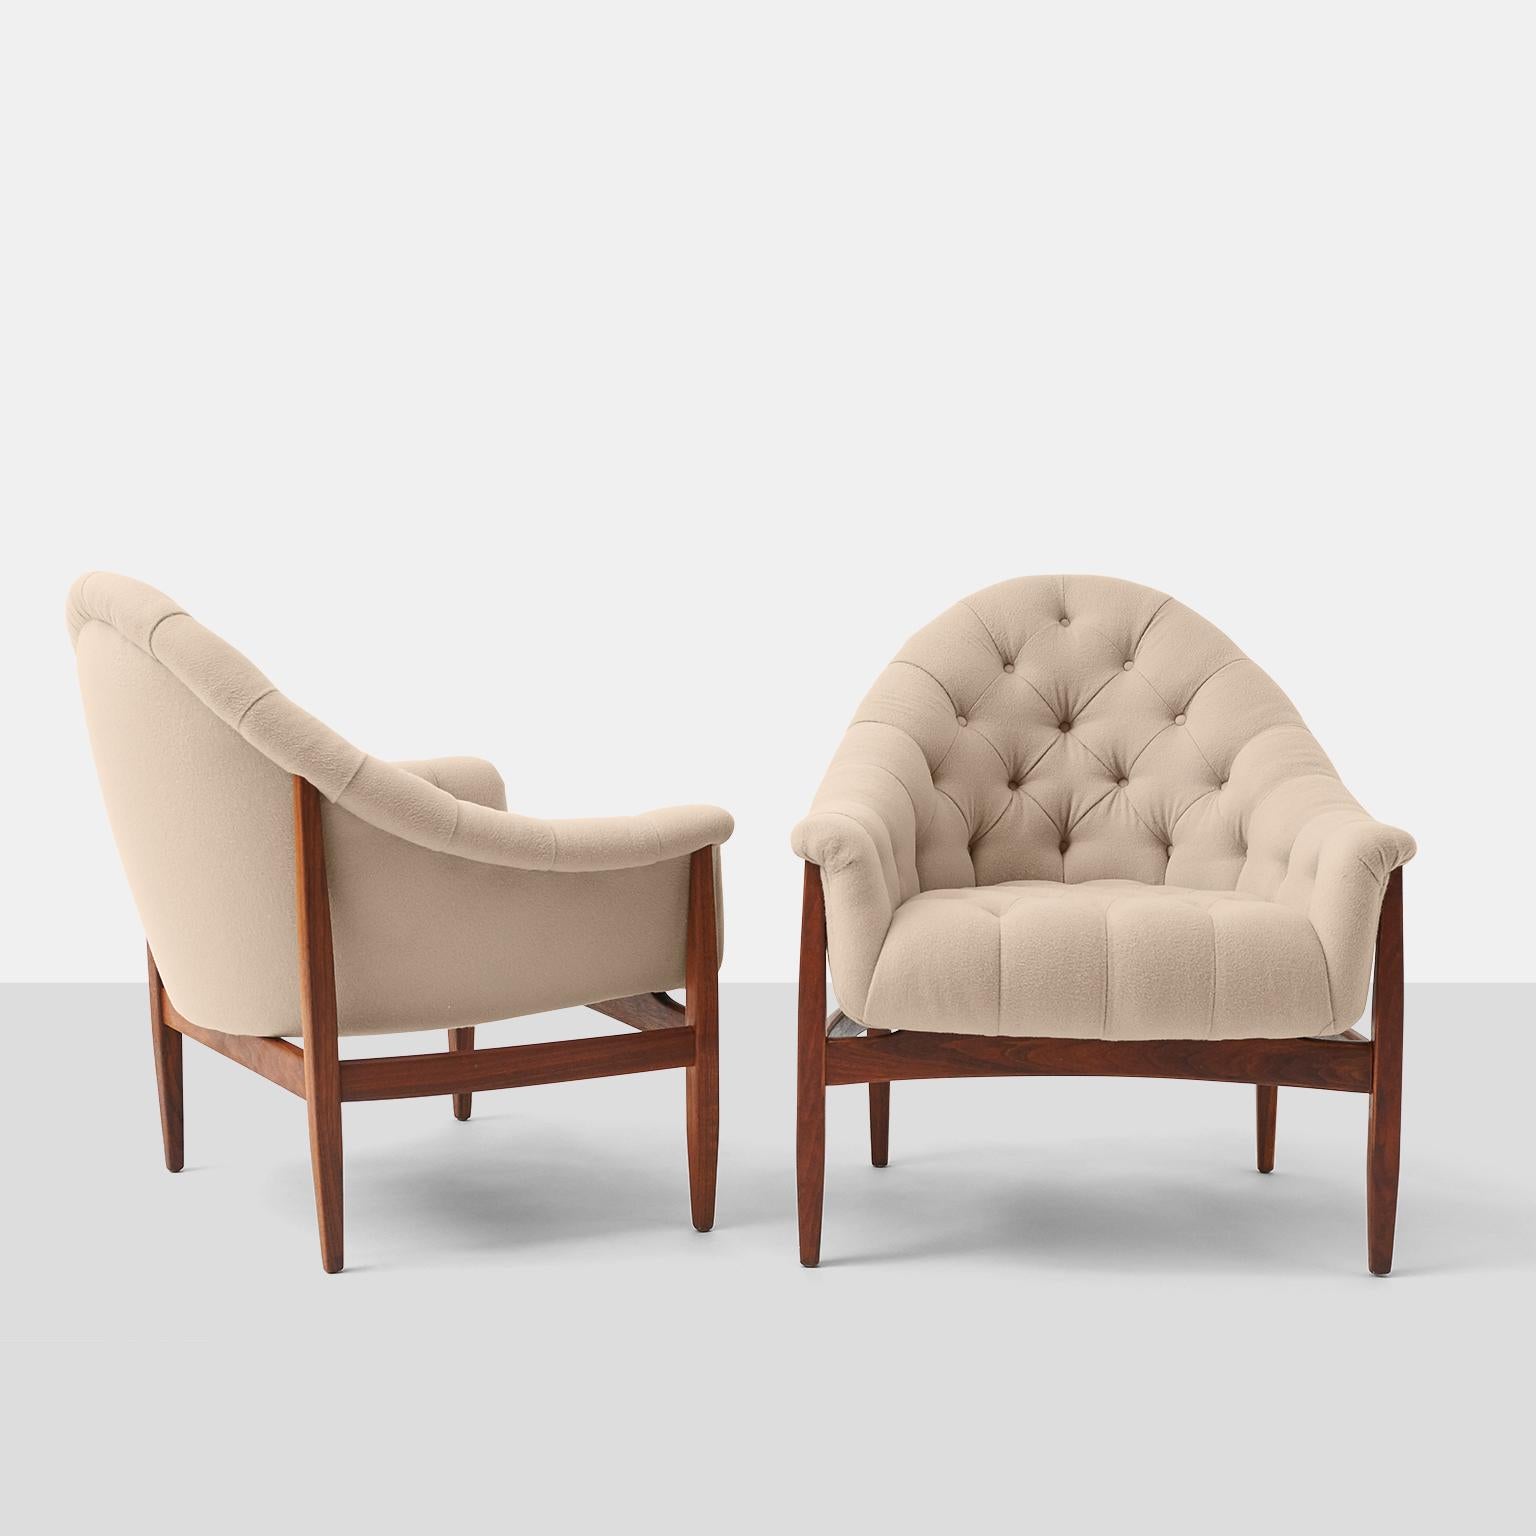 Getuftete Wannenstühle von Milo Baughman für Thayer Coggin. Ein seltener, früher Stil, der den Beginn ihrer langen Collaboration markiert. Die Rahmen aus Nussbaumholz unterstützen die niedrige Schaufel-Bestuhlung.
Kürzlich restauriert und mit